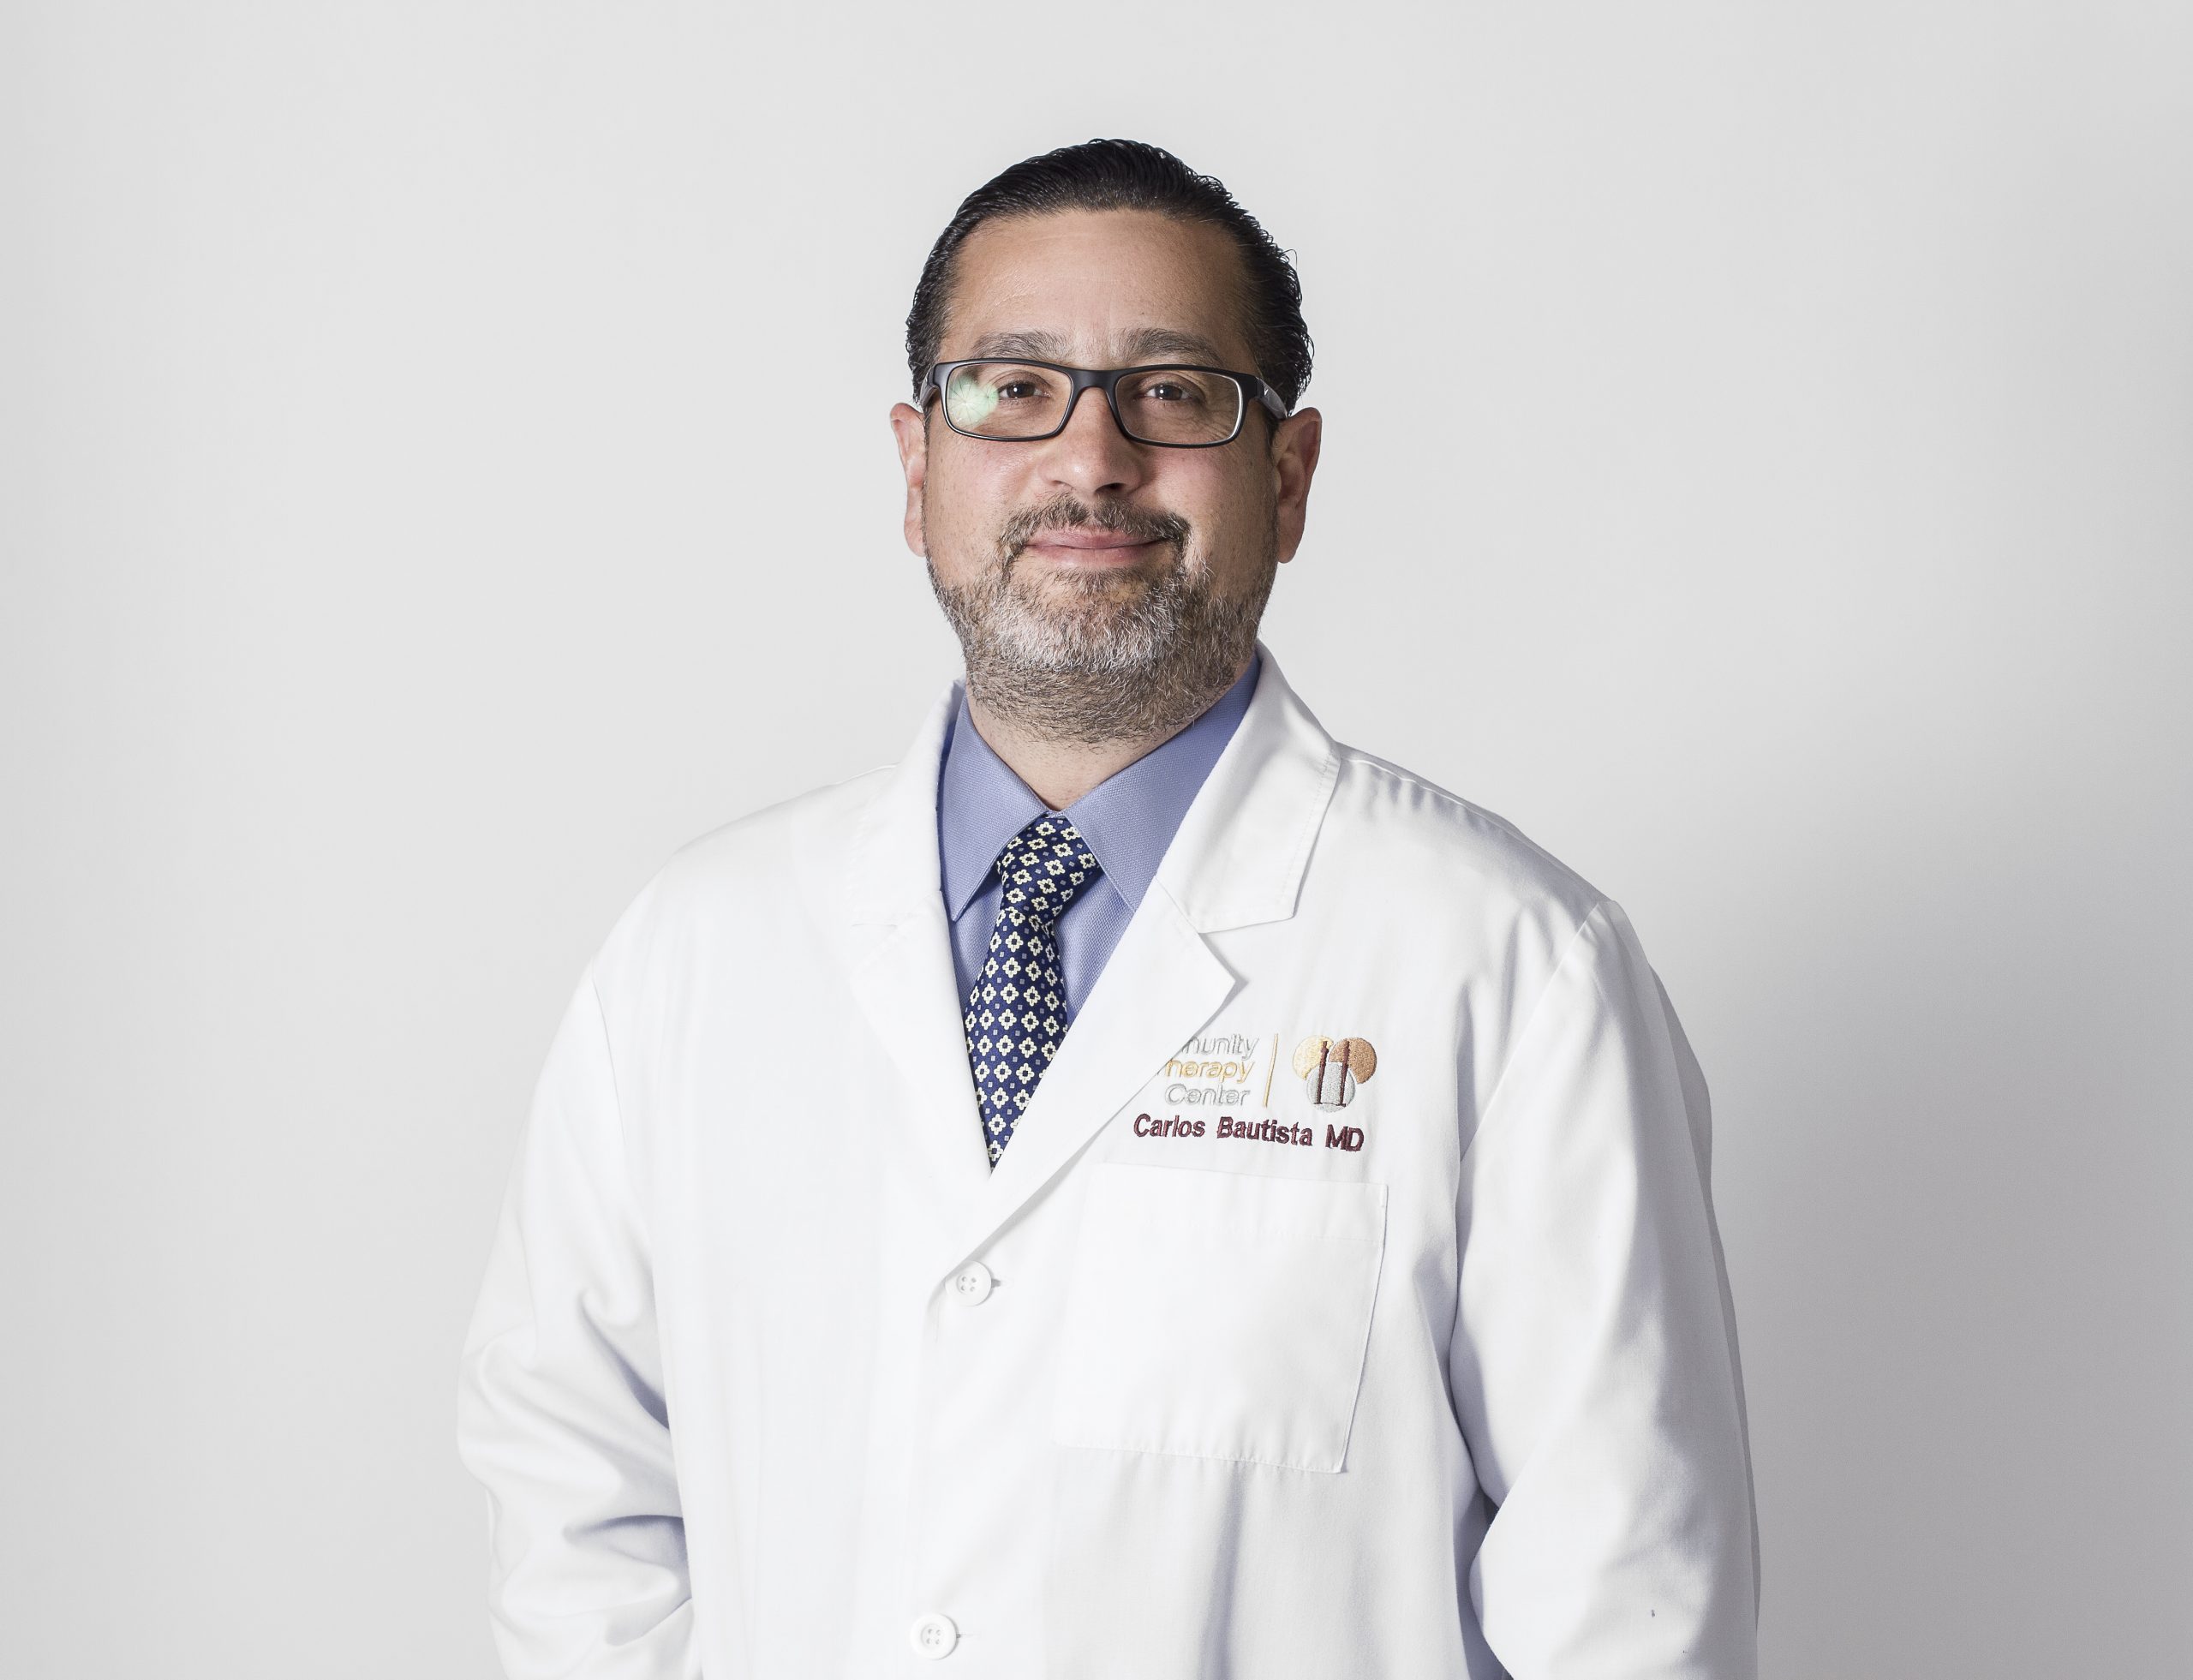 Dr. Carlos Bautista, M.D.